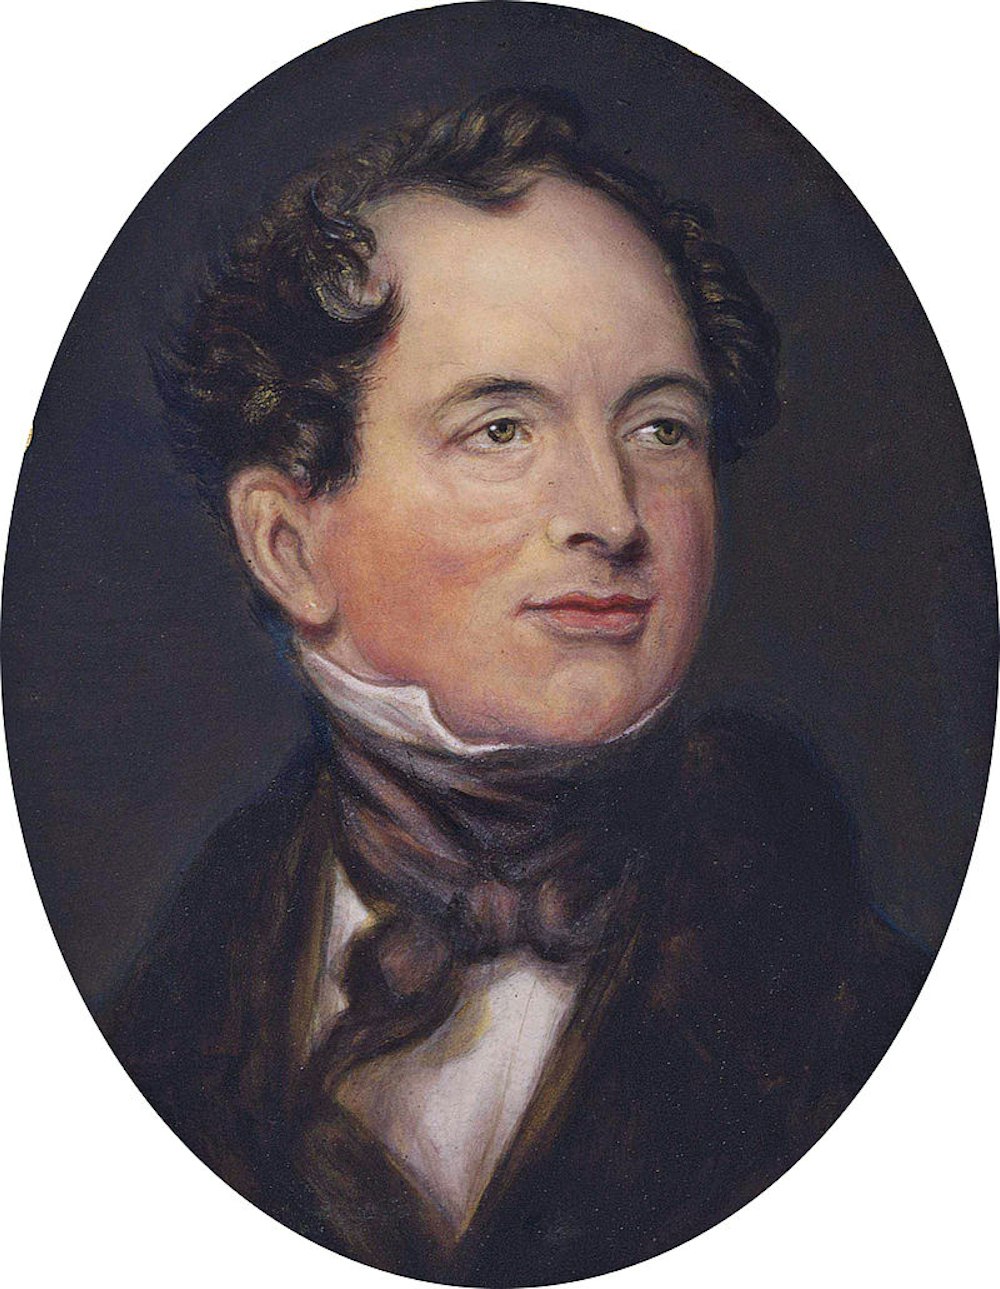 R.I.P. Thomas Moore (28 May 1779 – 25 February 1852)